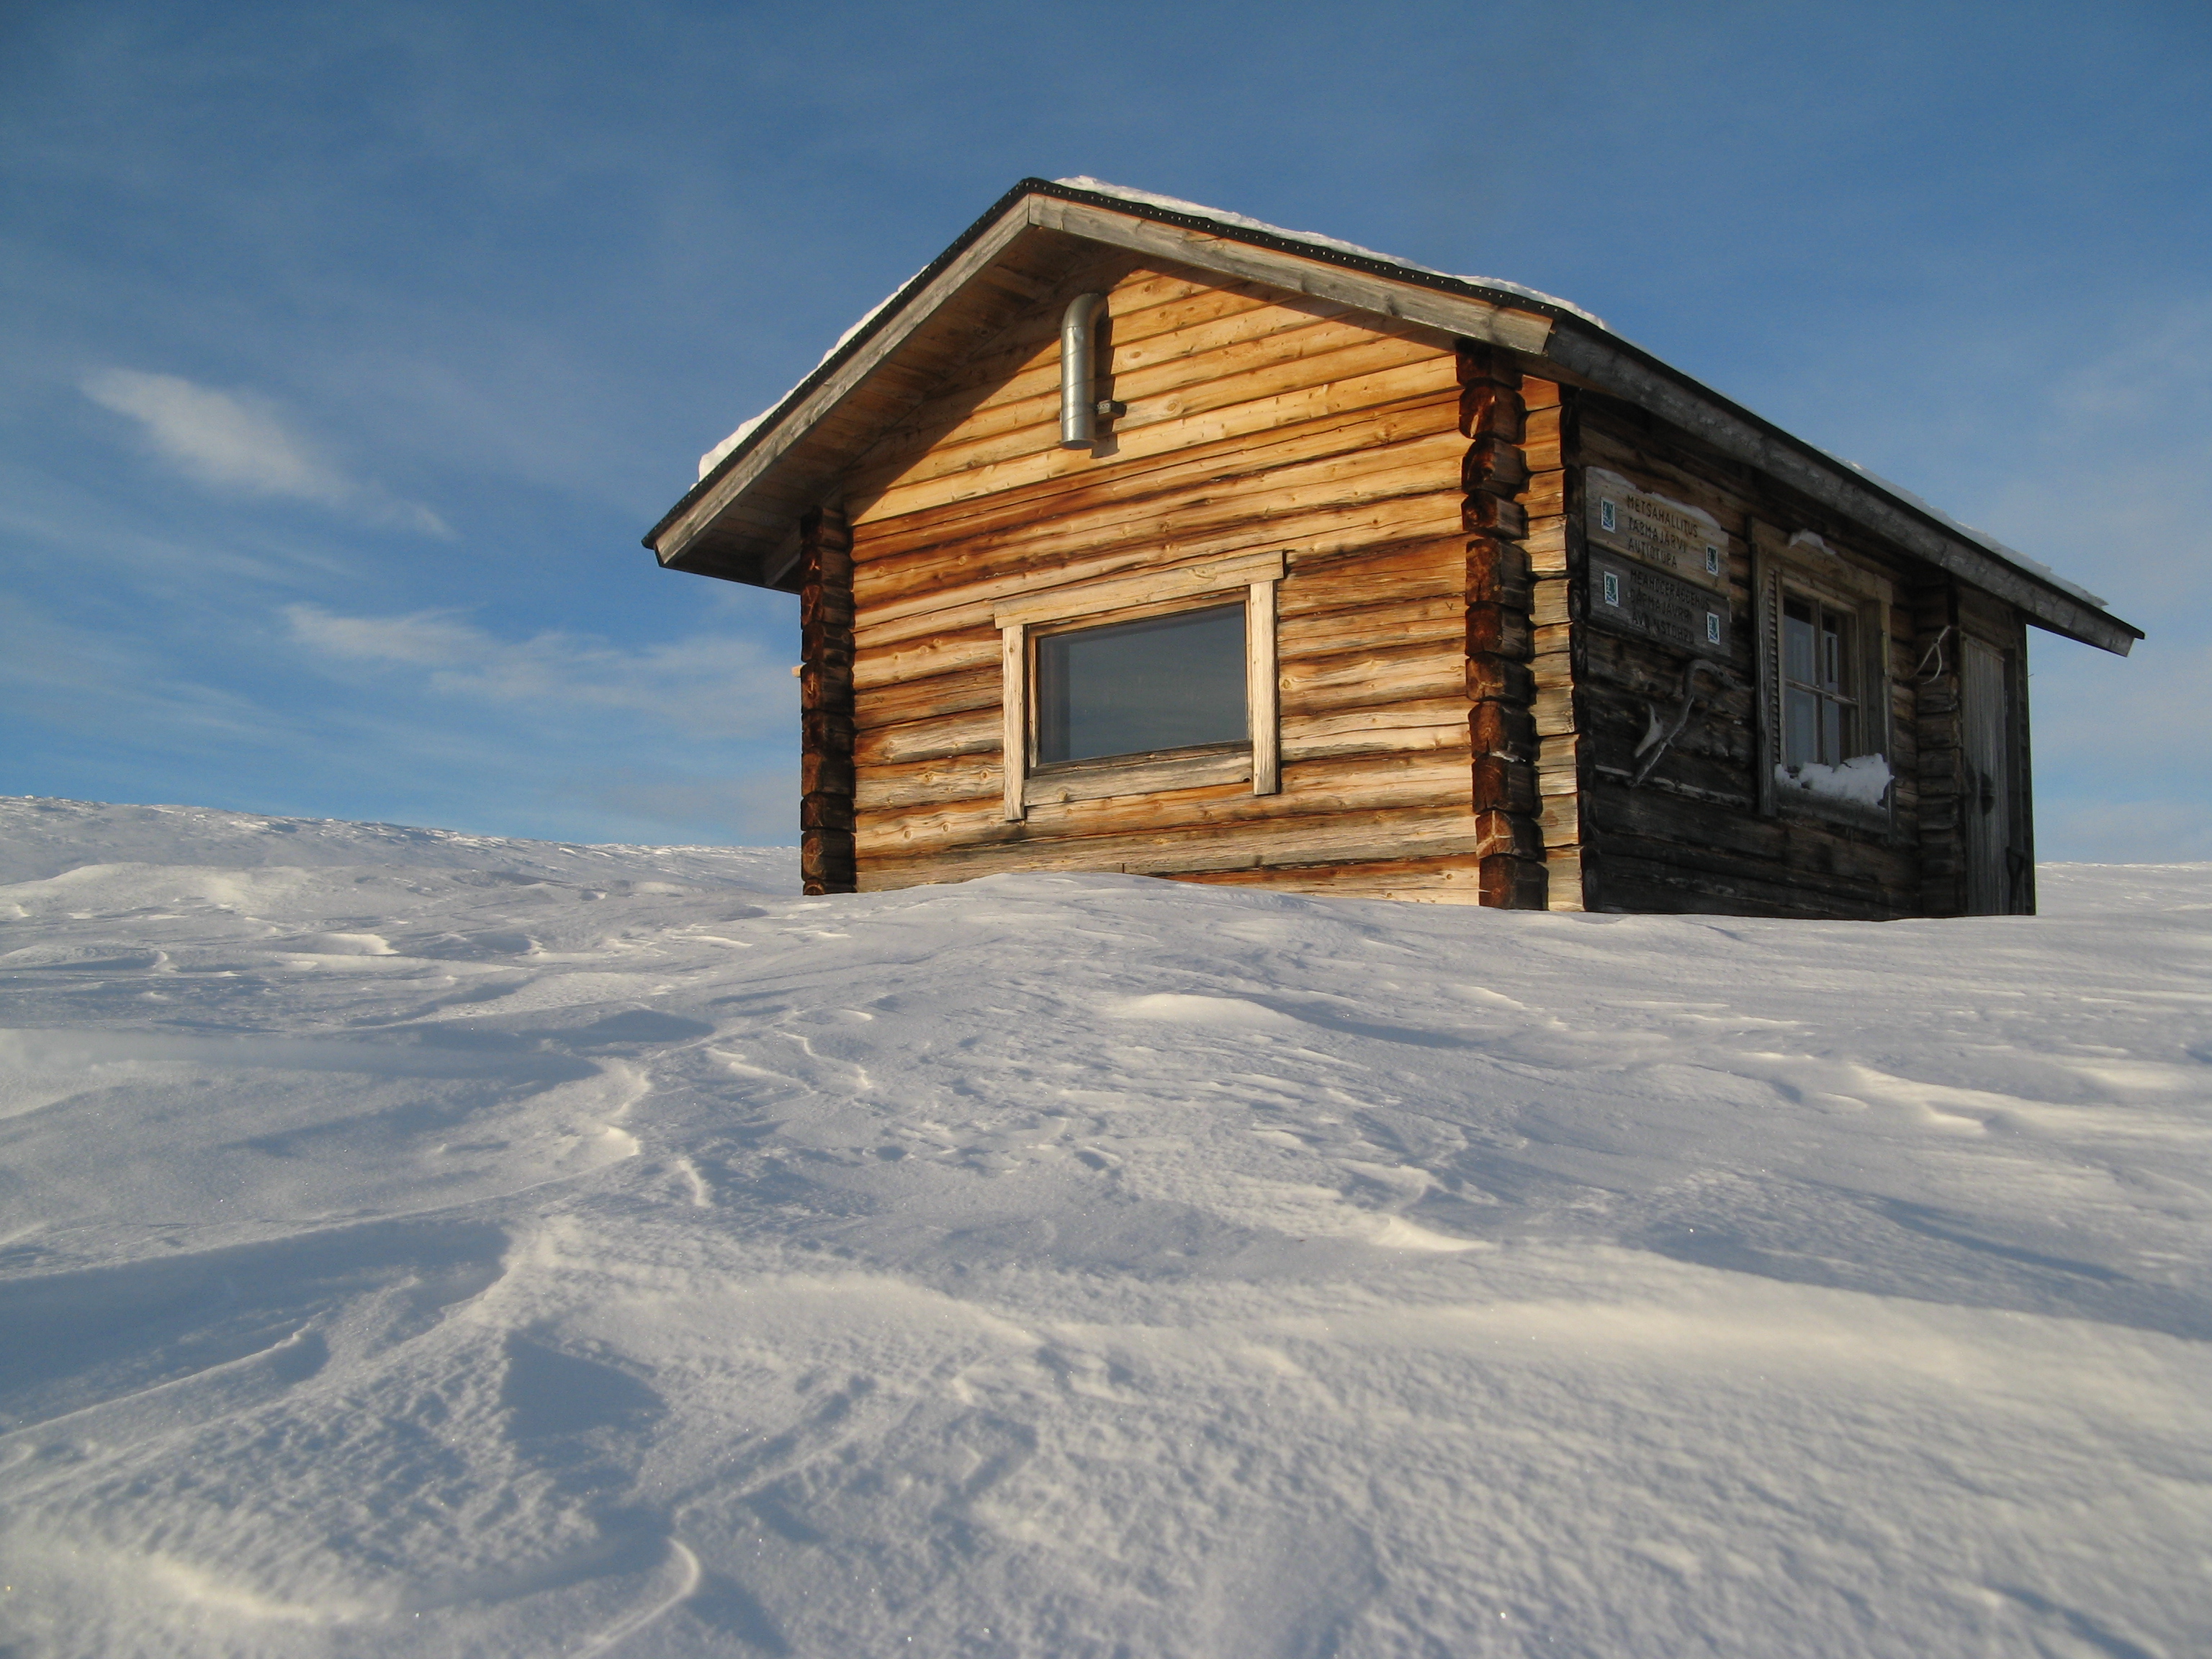 Taapmajärvi wilderness hut detail